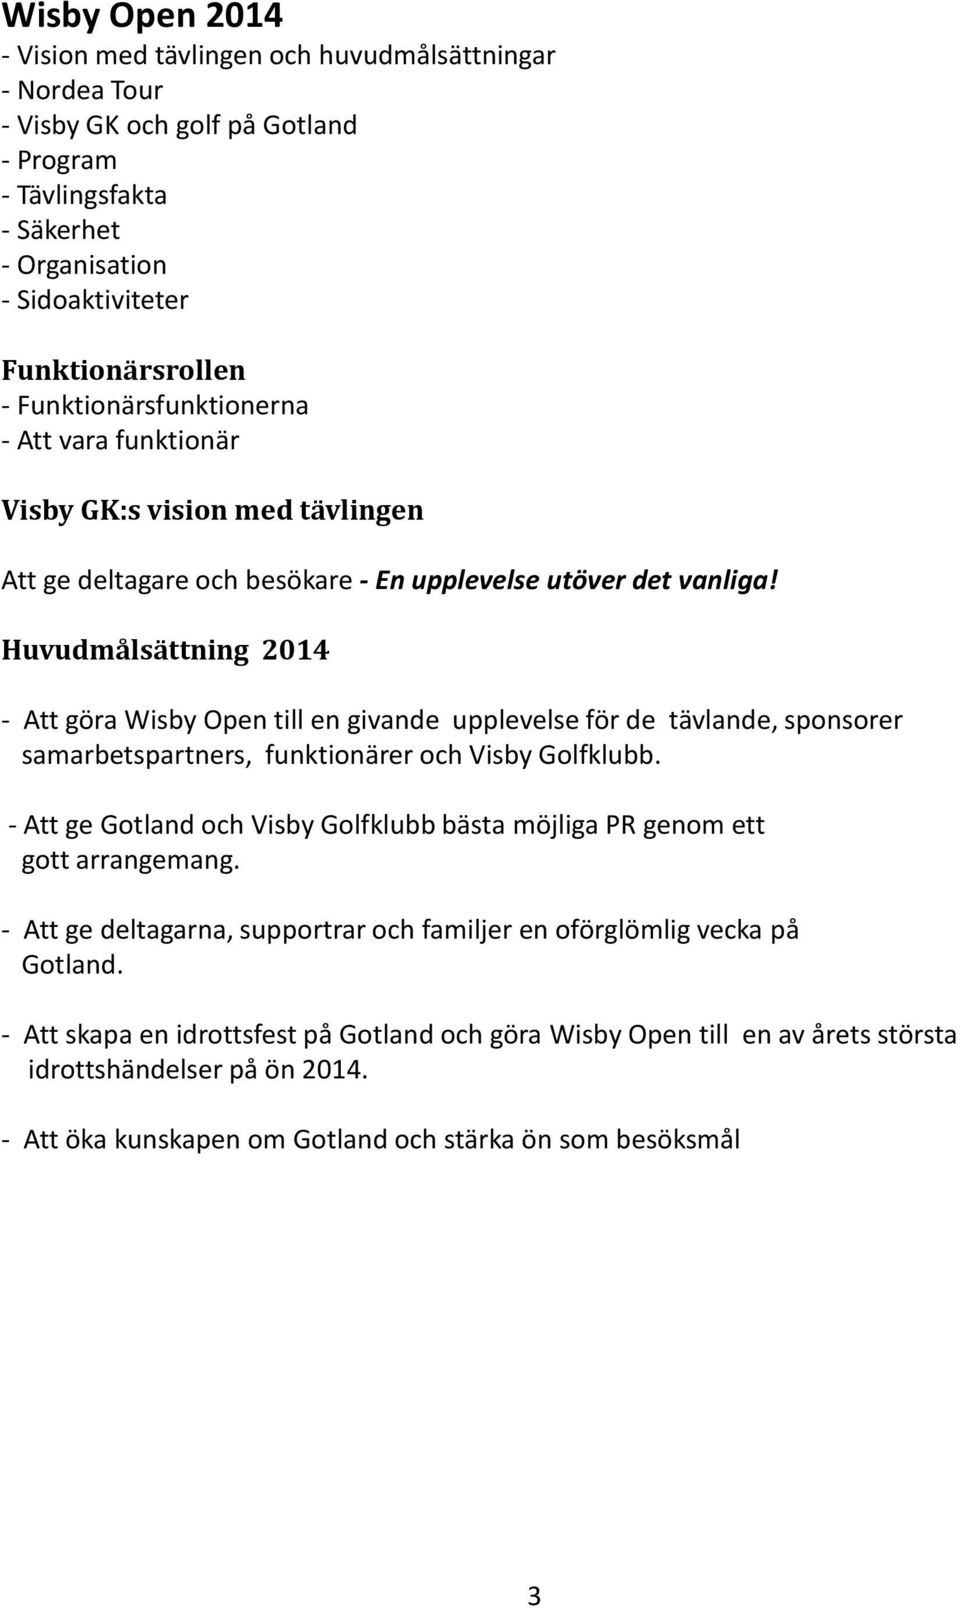 Huvudmålsättning 2014 - Att göra Wisby Open till en givande upplevelse för de tävlande, sponsorer samarbetspartners, funktionärer och Visby Golfklubb.